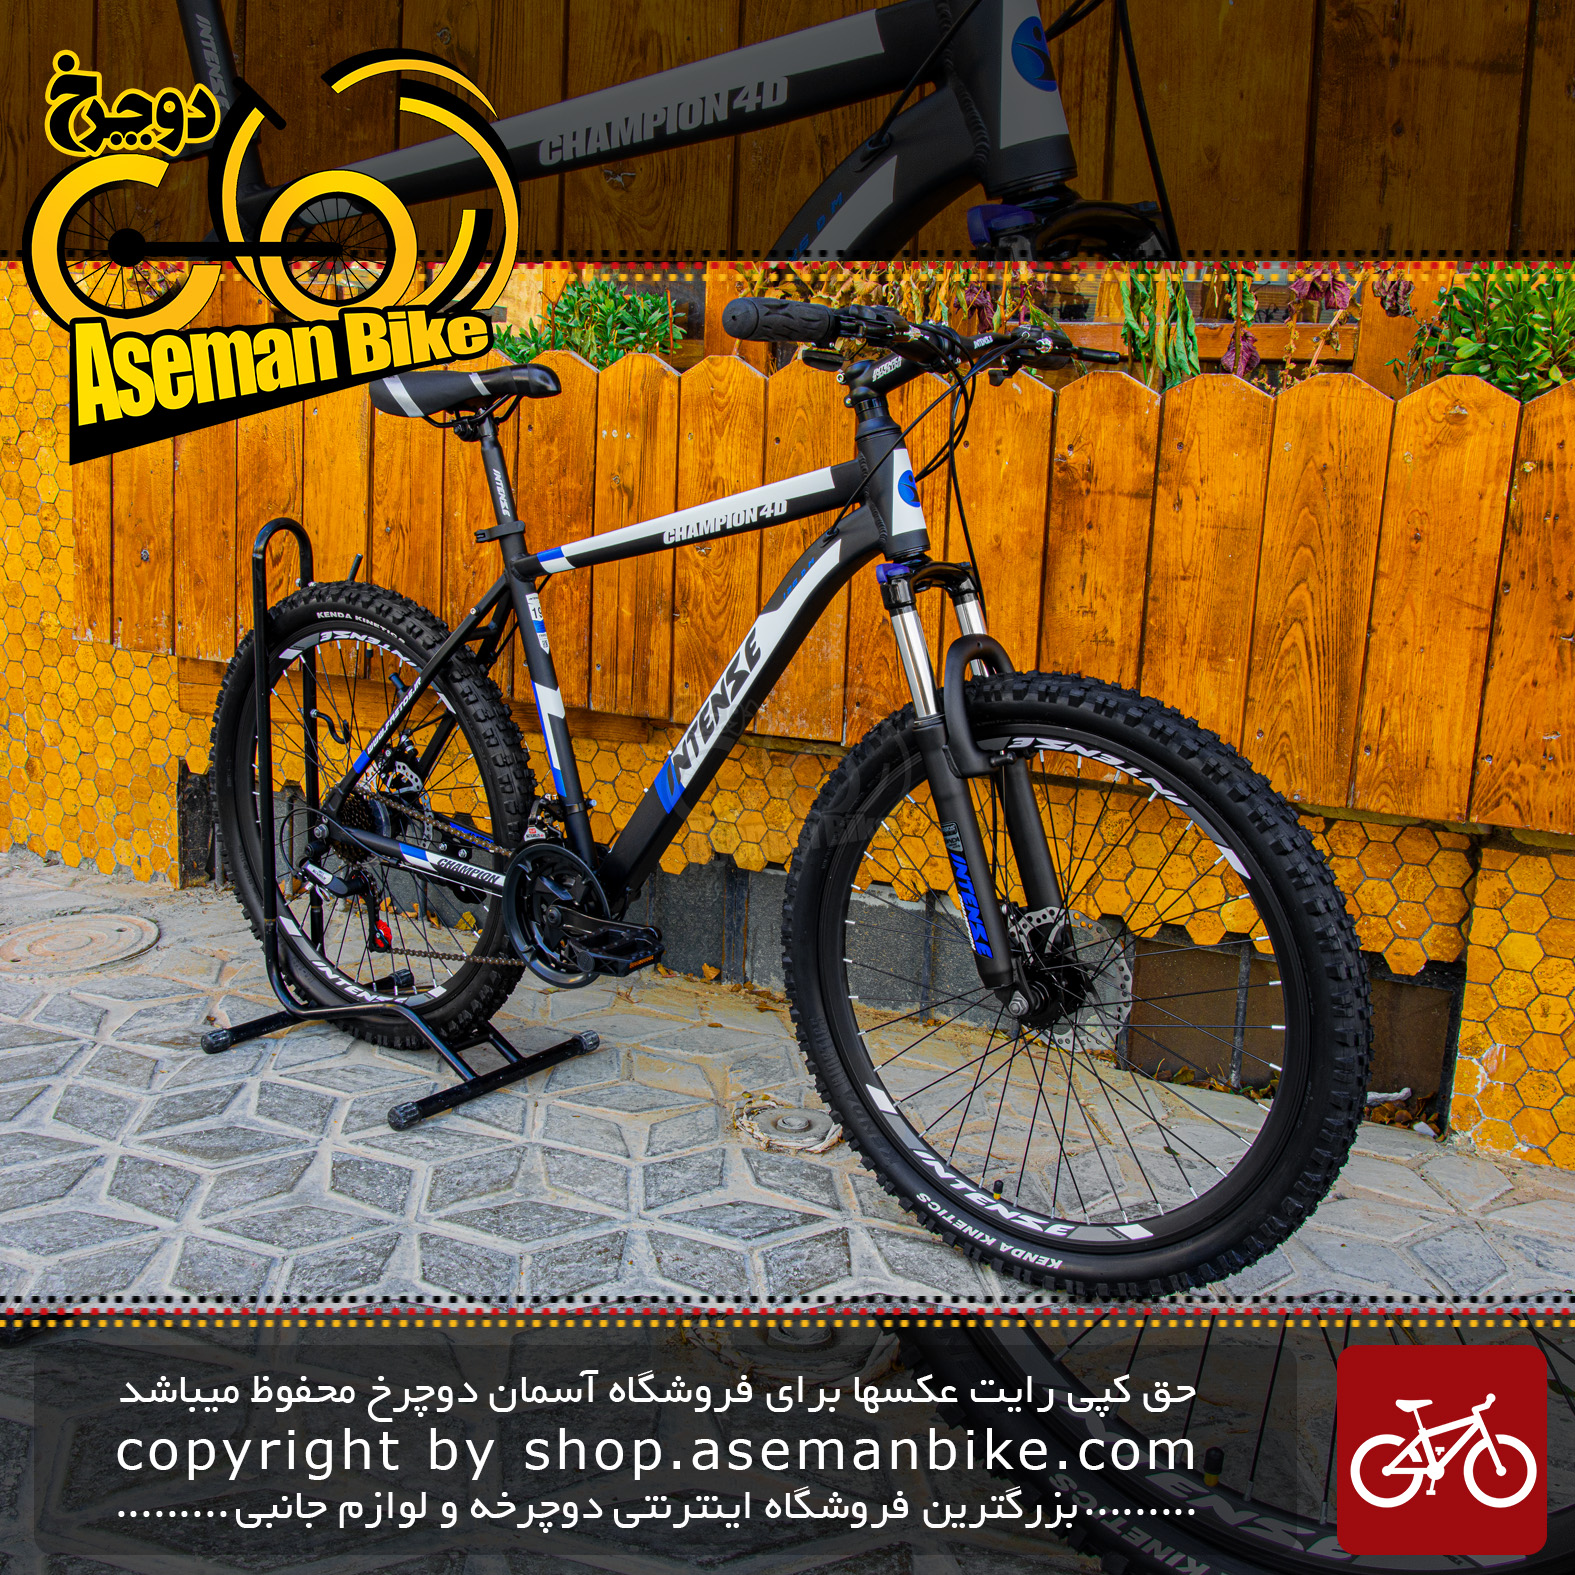 دوچرخه کوهستان اینتنس مدل چمپیون 4 دی سایز 26 با سیستم دنده ی 21 سرعته مشکی آبی Bicycle Intense Champion 4D MTB Size 26 21 Speed Black Blue